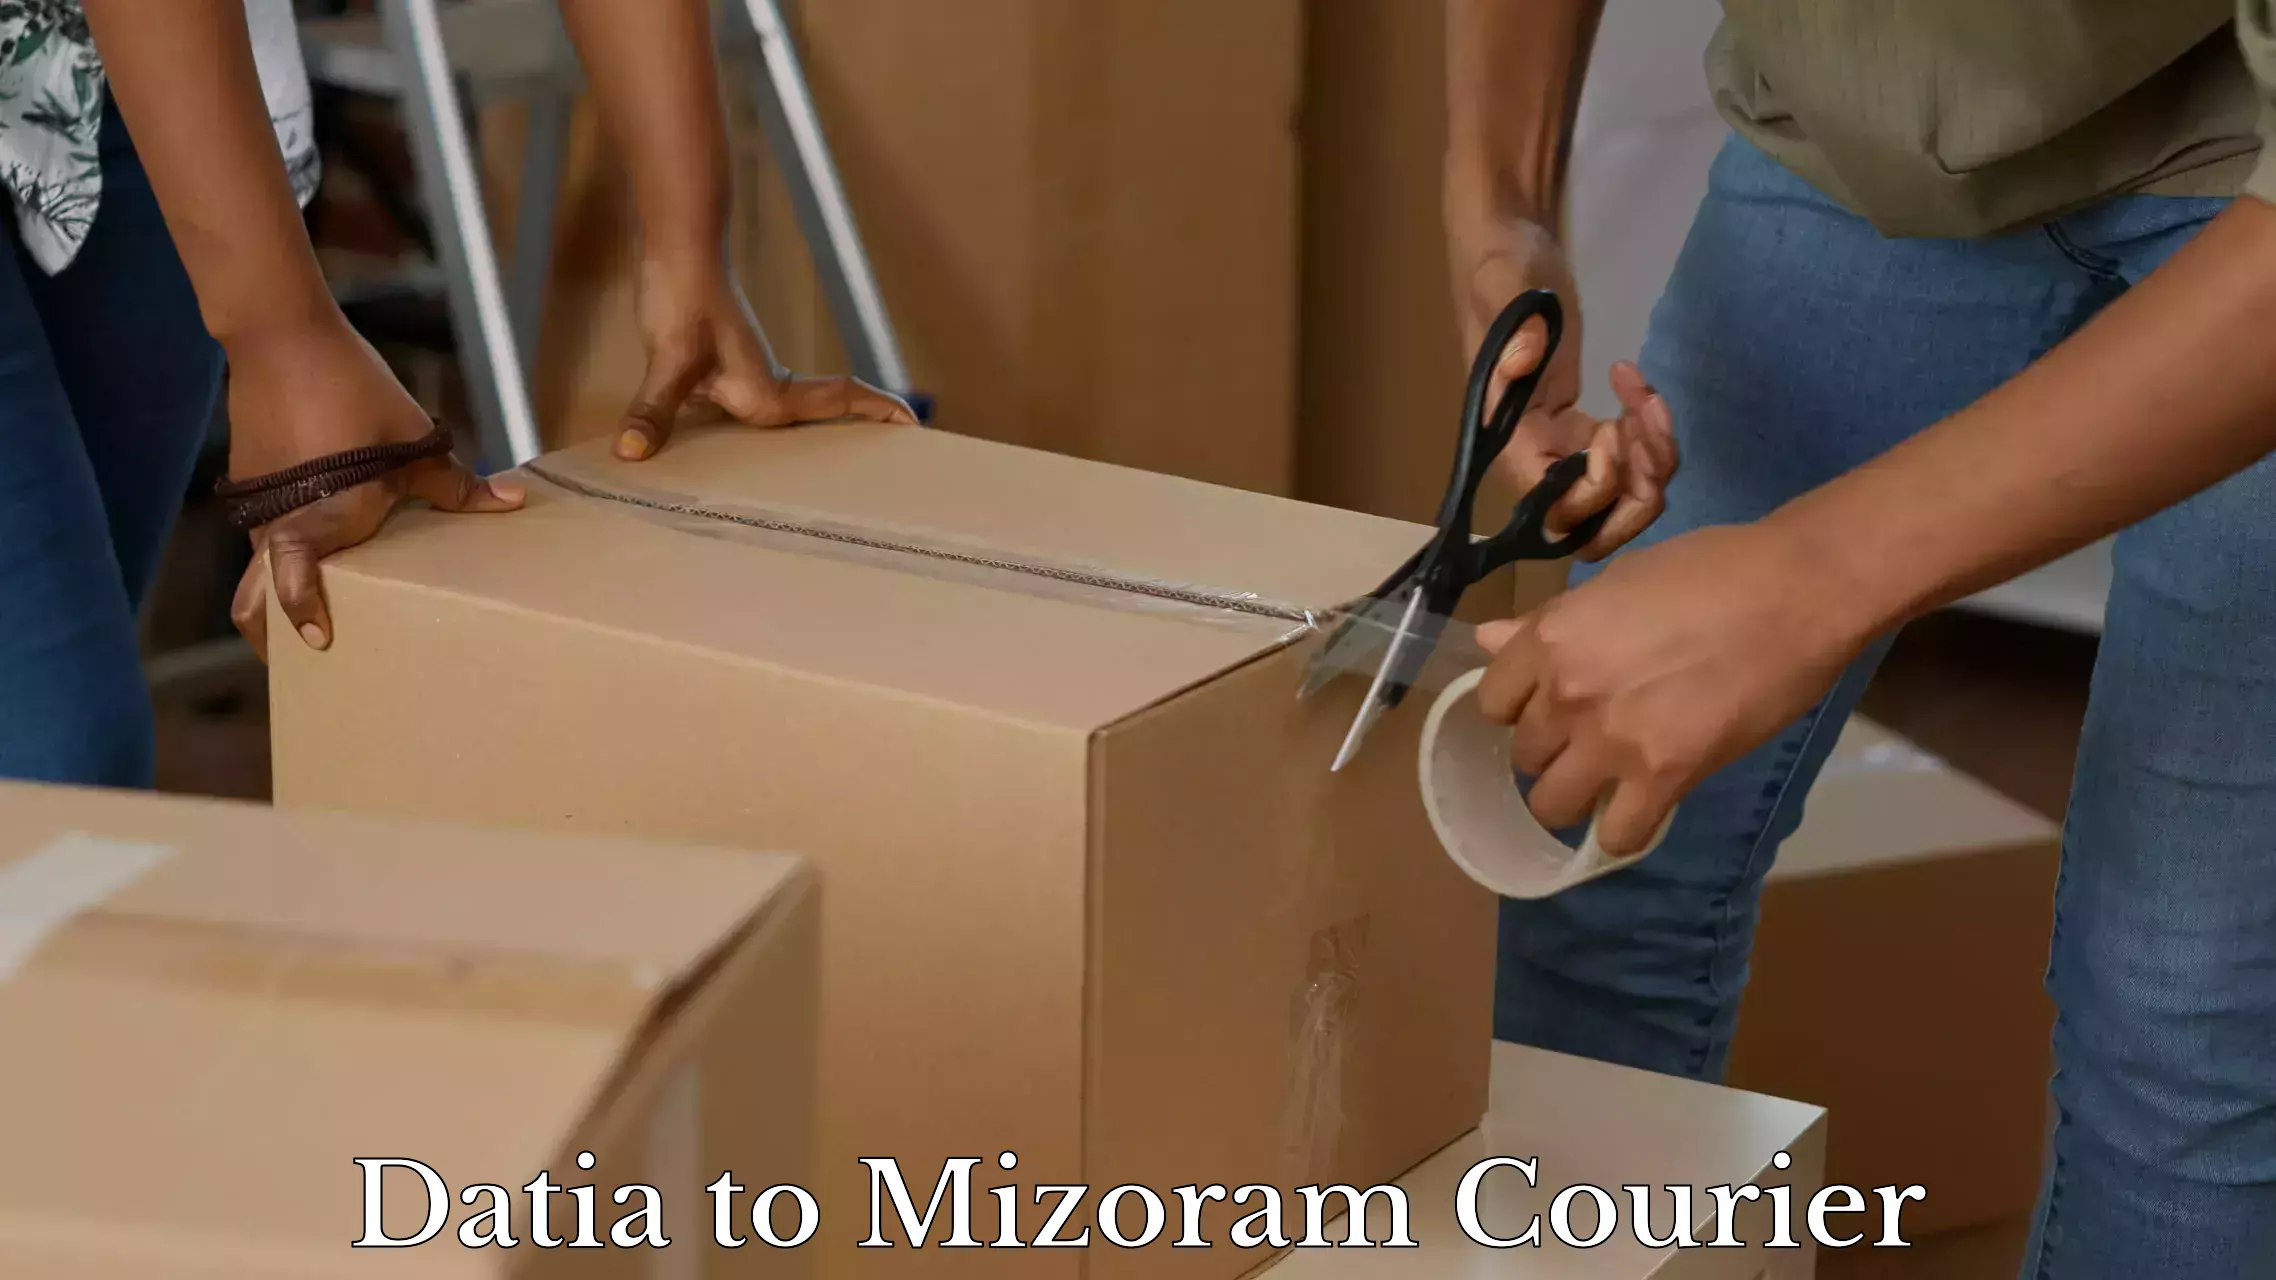 Luggage shipment specialists Datia to Mizoram